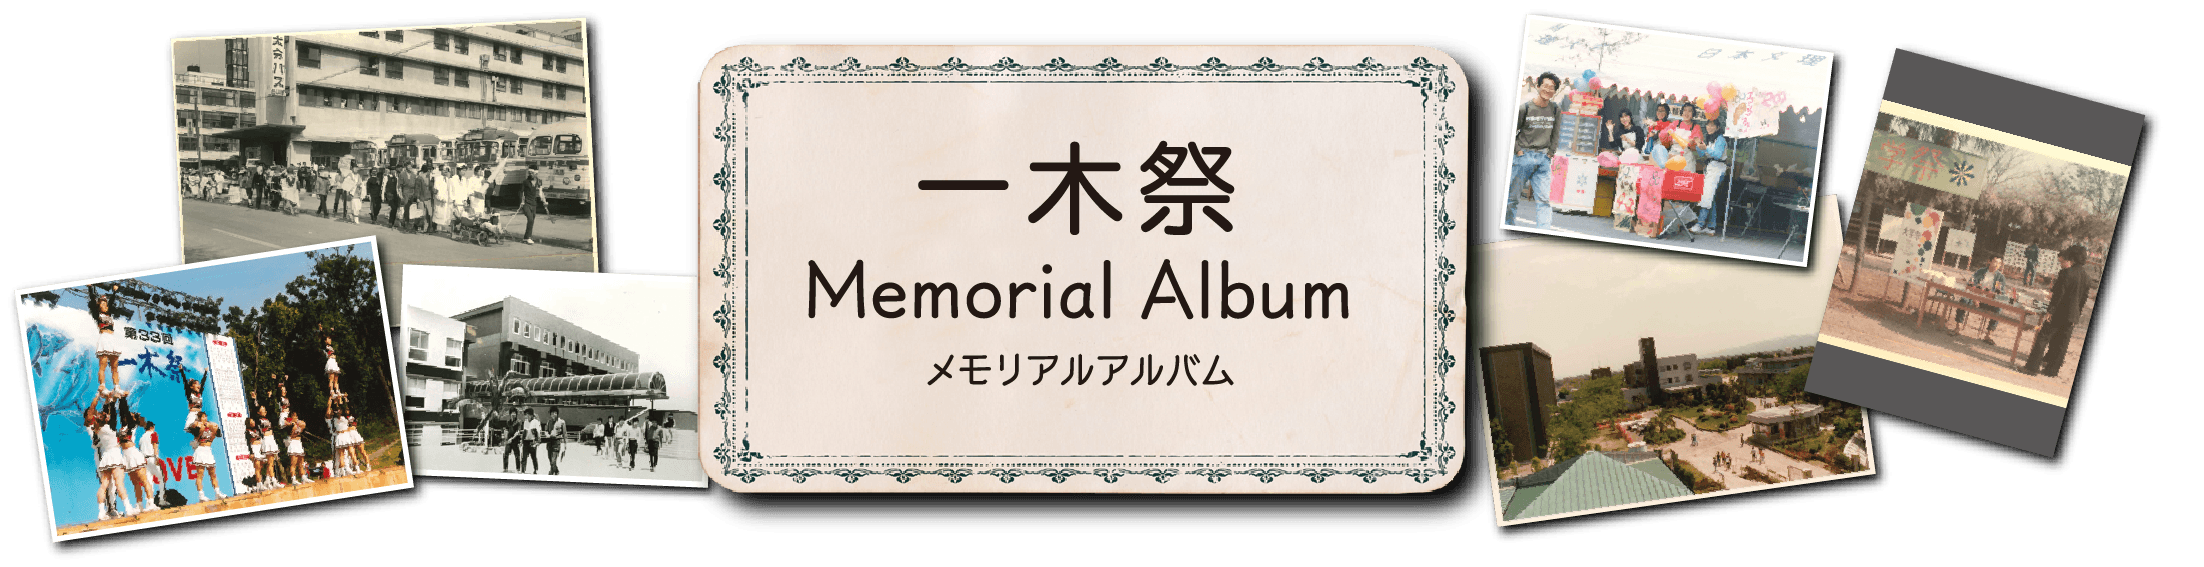 一木祭Memorial Albumメモリアルアルバム